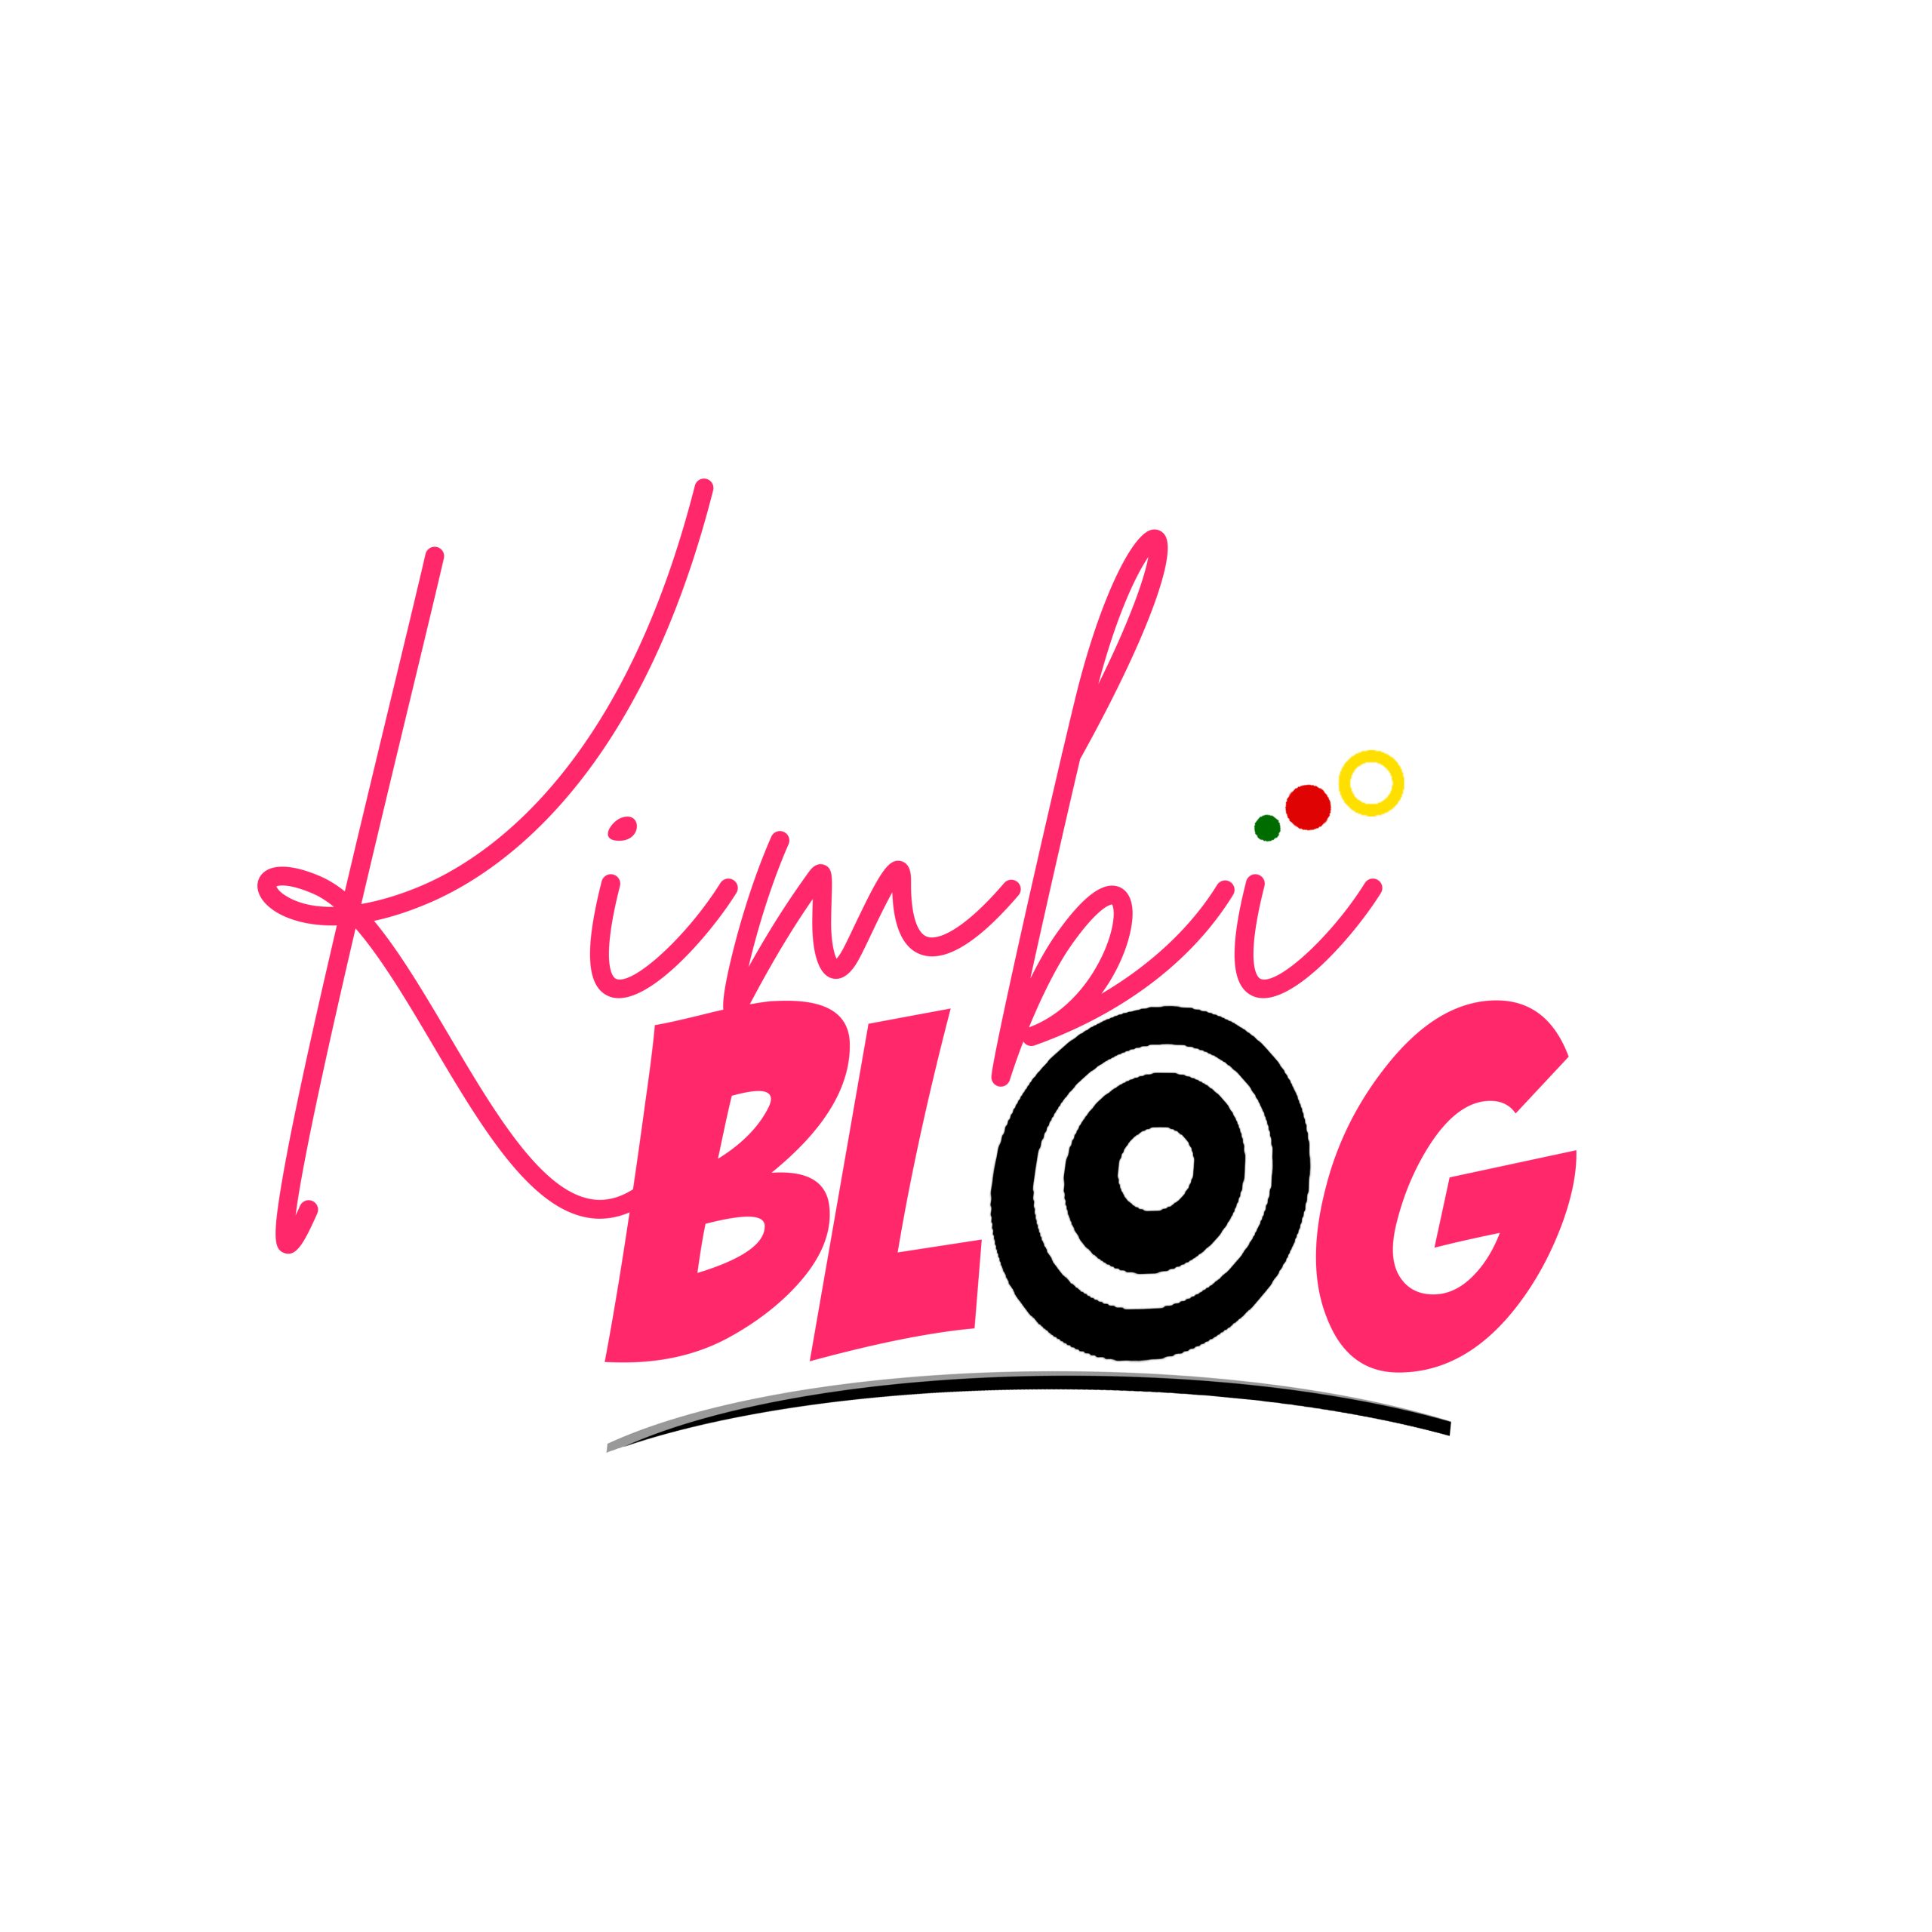 Welcome to Business on Kimbi blog